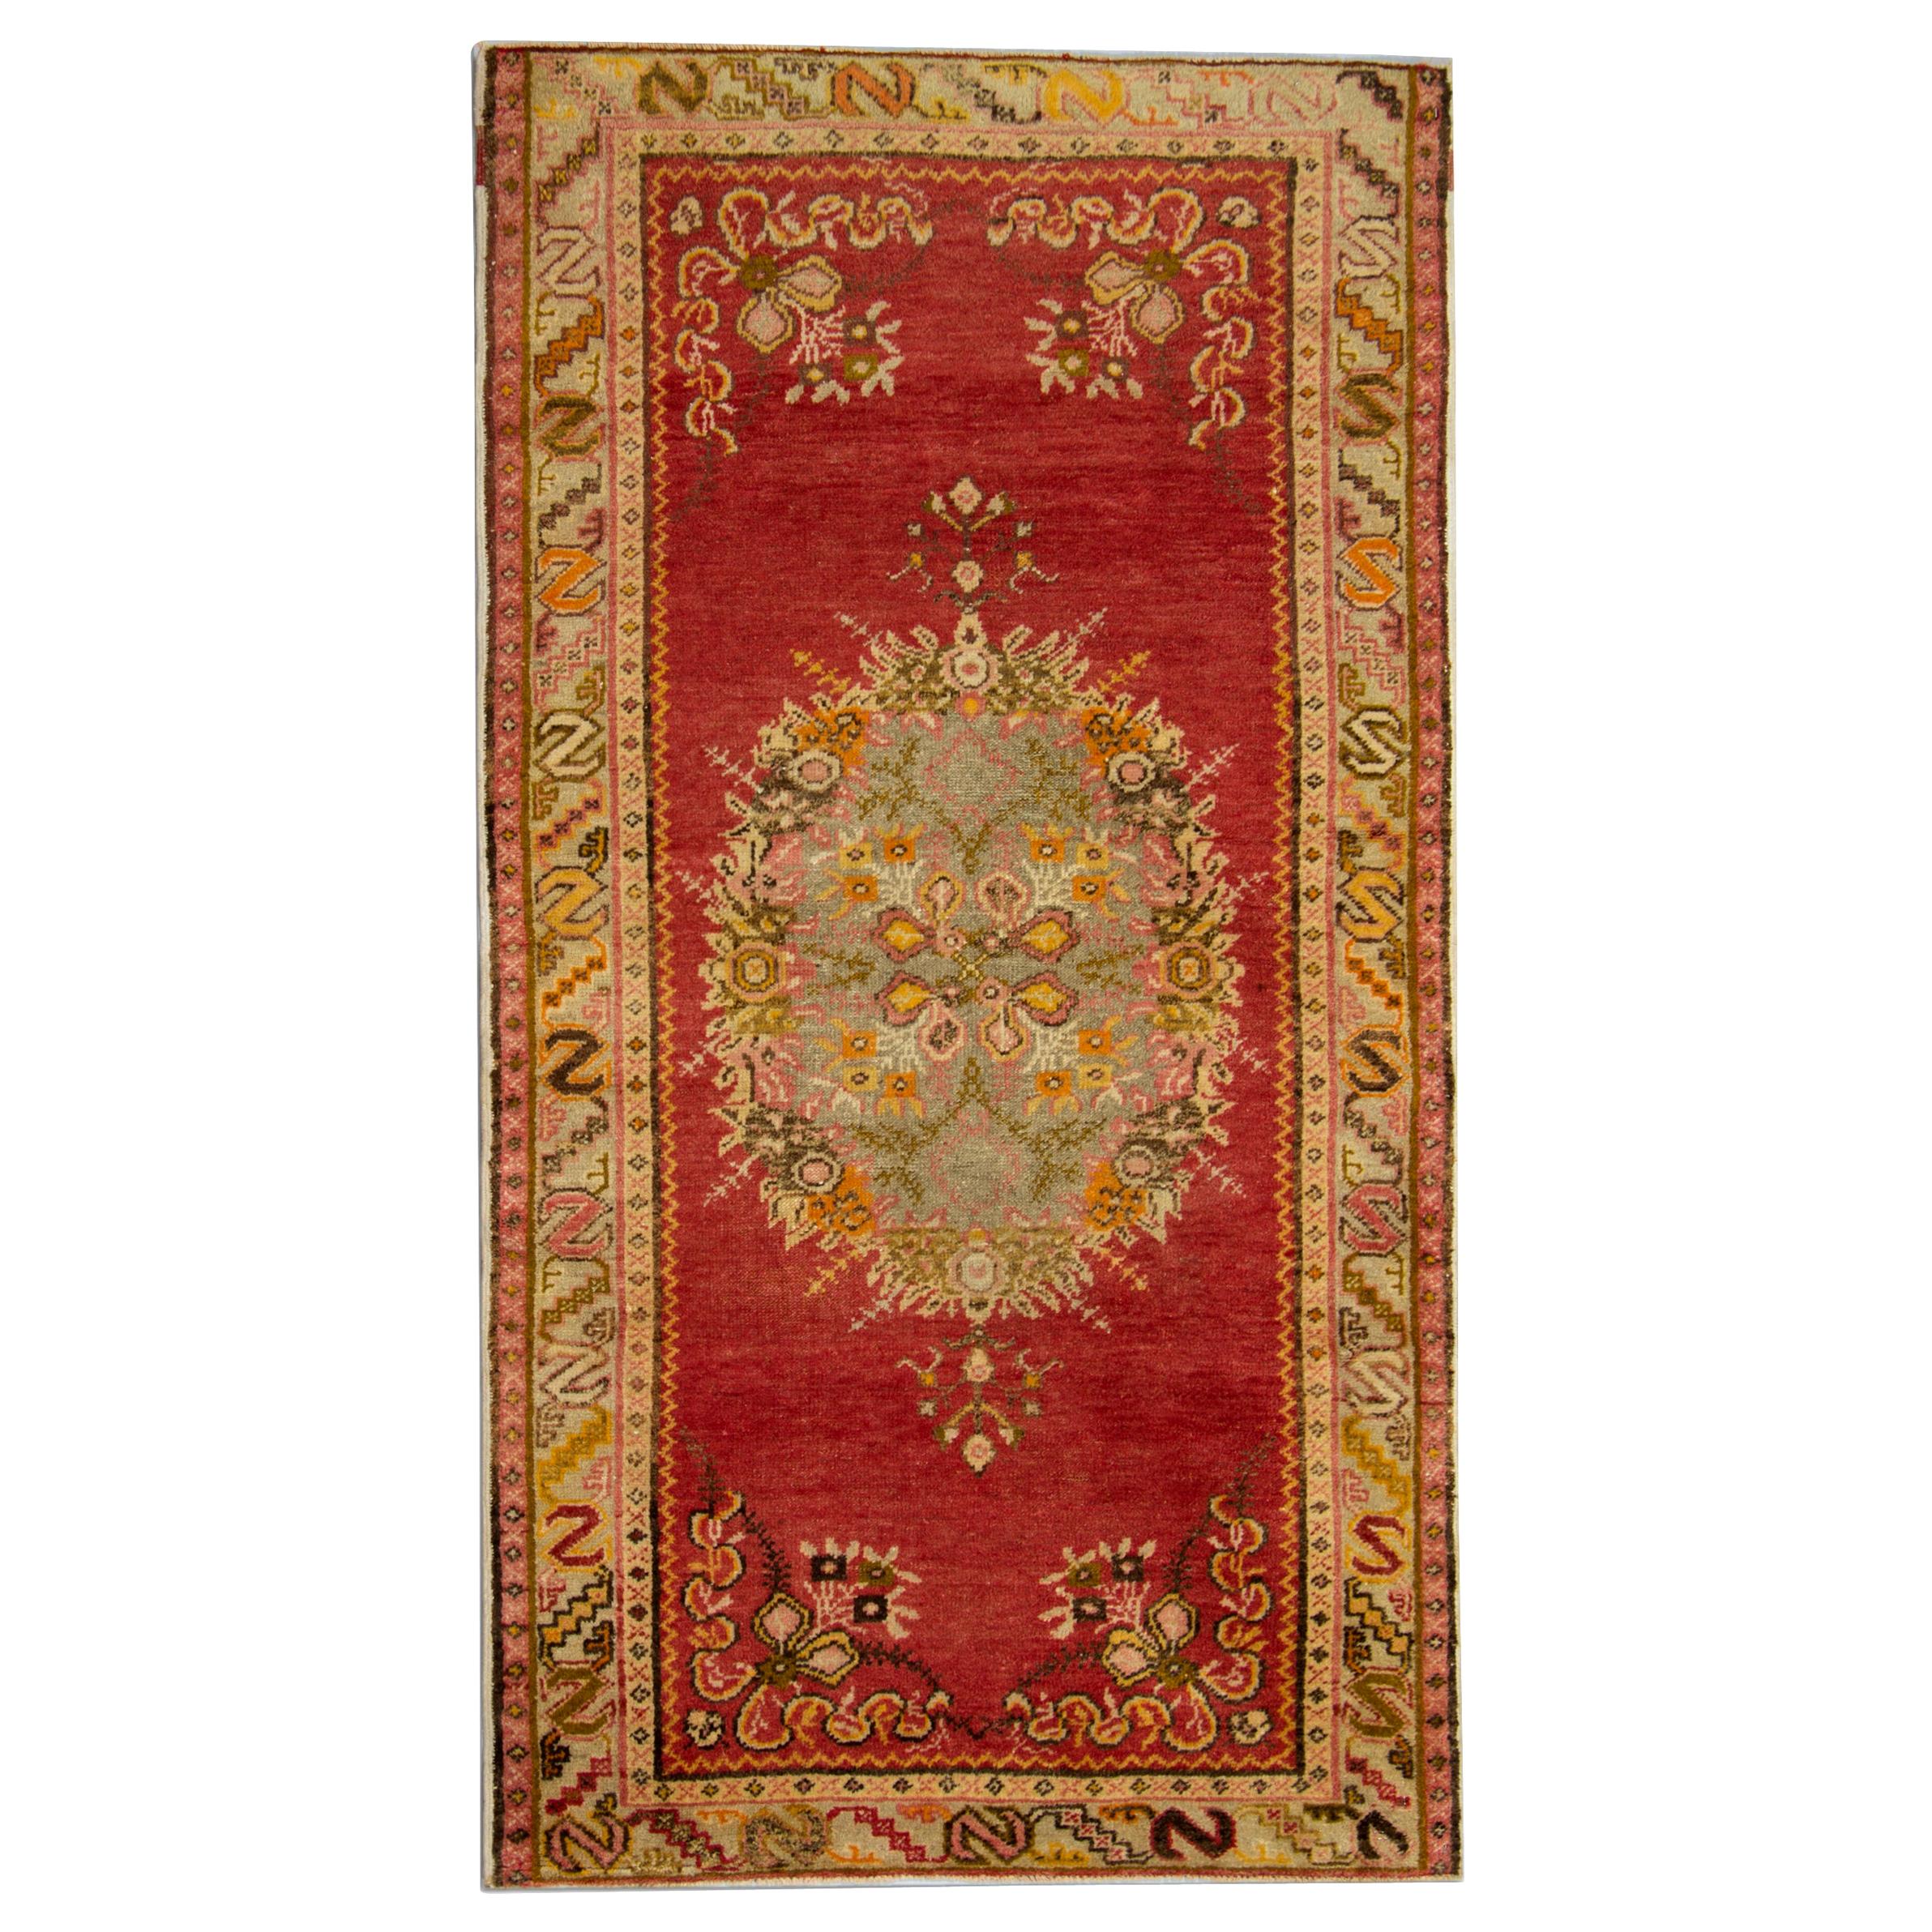 Handgefertigter antiker Teppich, türkischer Teppich, luxuriöse rote orientalische Teppiche